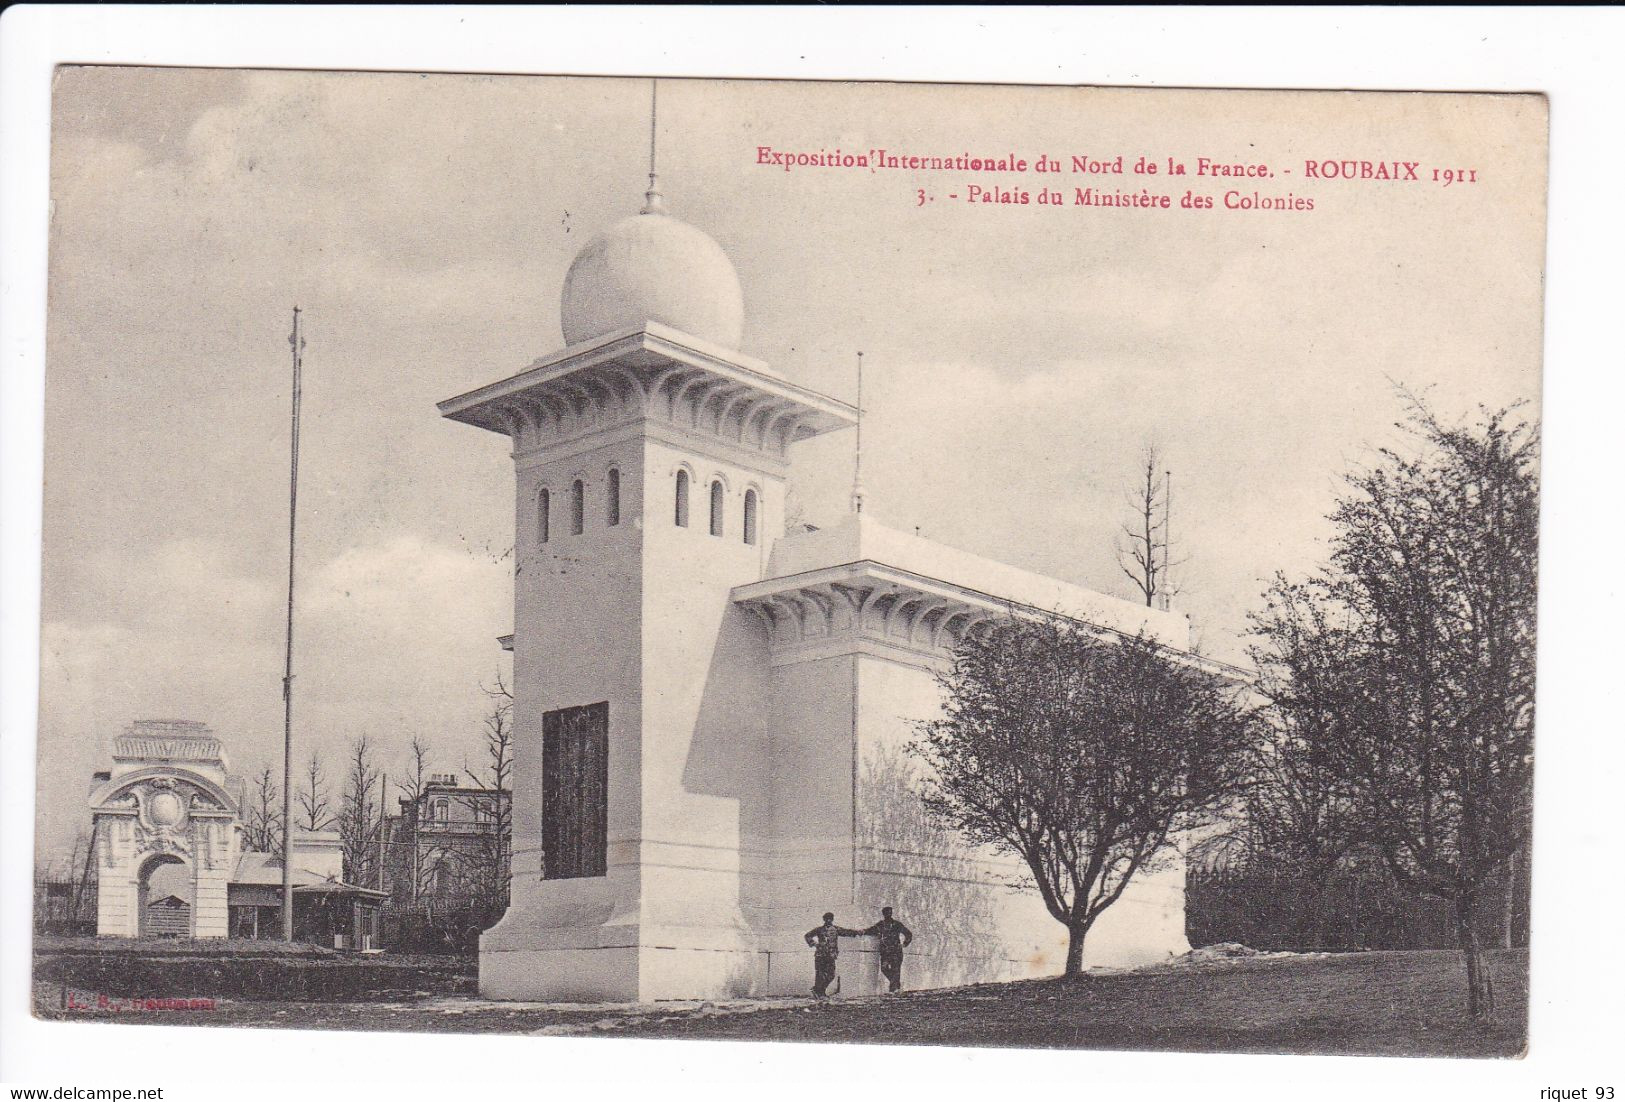 lot 8 cp-Exposition internationale du Nord de la France. ROUBAIX 1911- Vues diverses (voir scans)